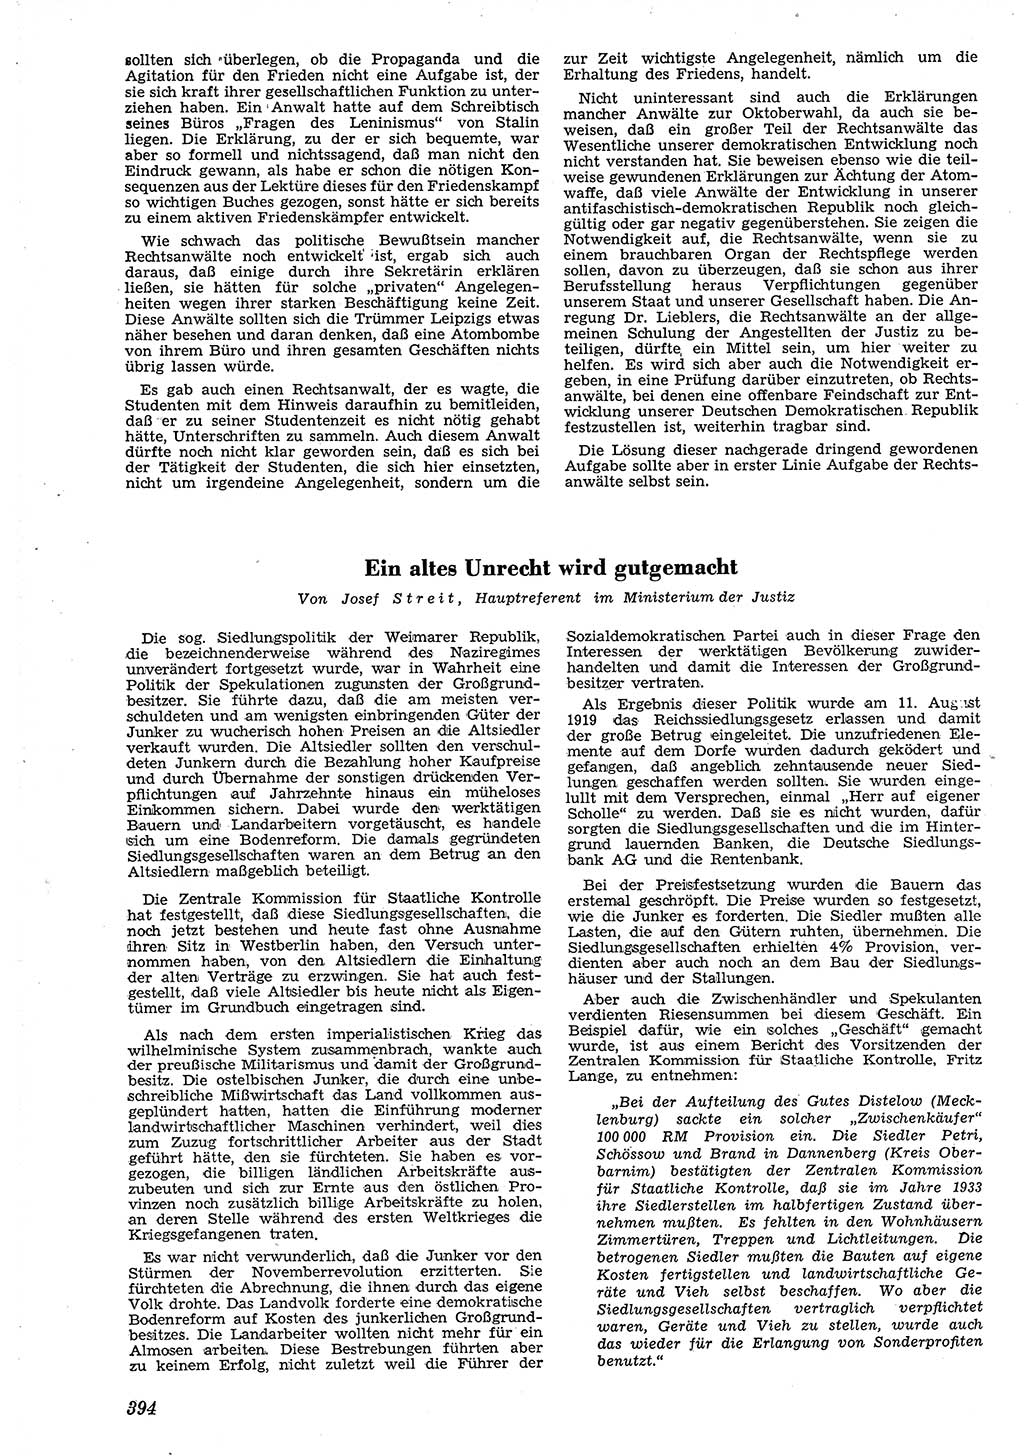 Neue Justiz (NJ), Zeitschrift für Recht und Rechtswissenschaft [Deutsche Demokratische Republik (DDR)], 4. Jahrgang 1950, Seite 394 (NJ DDR 1950, S. 394)